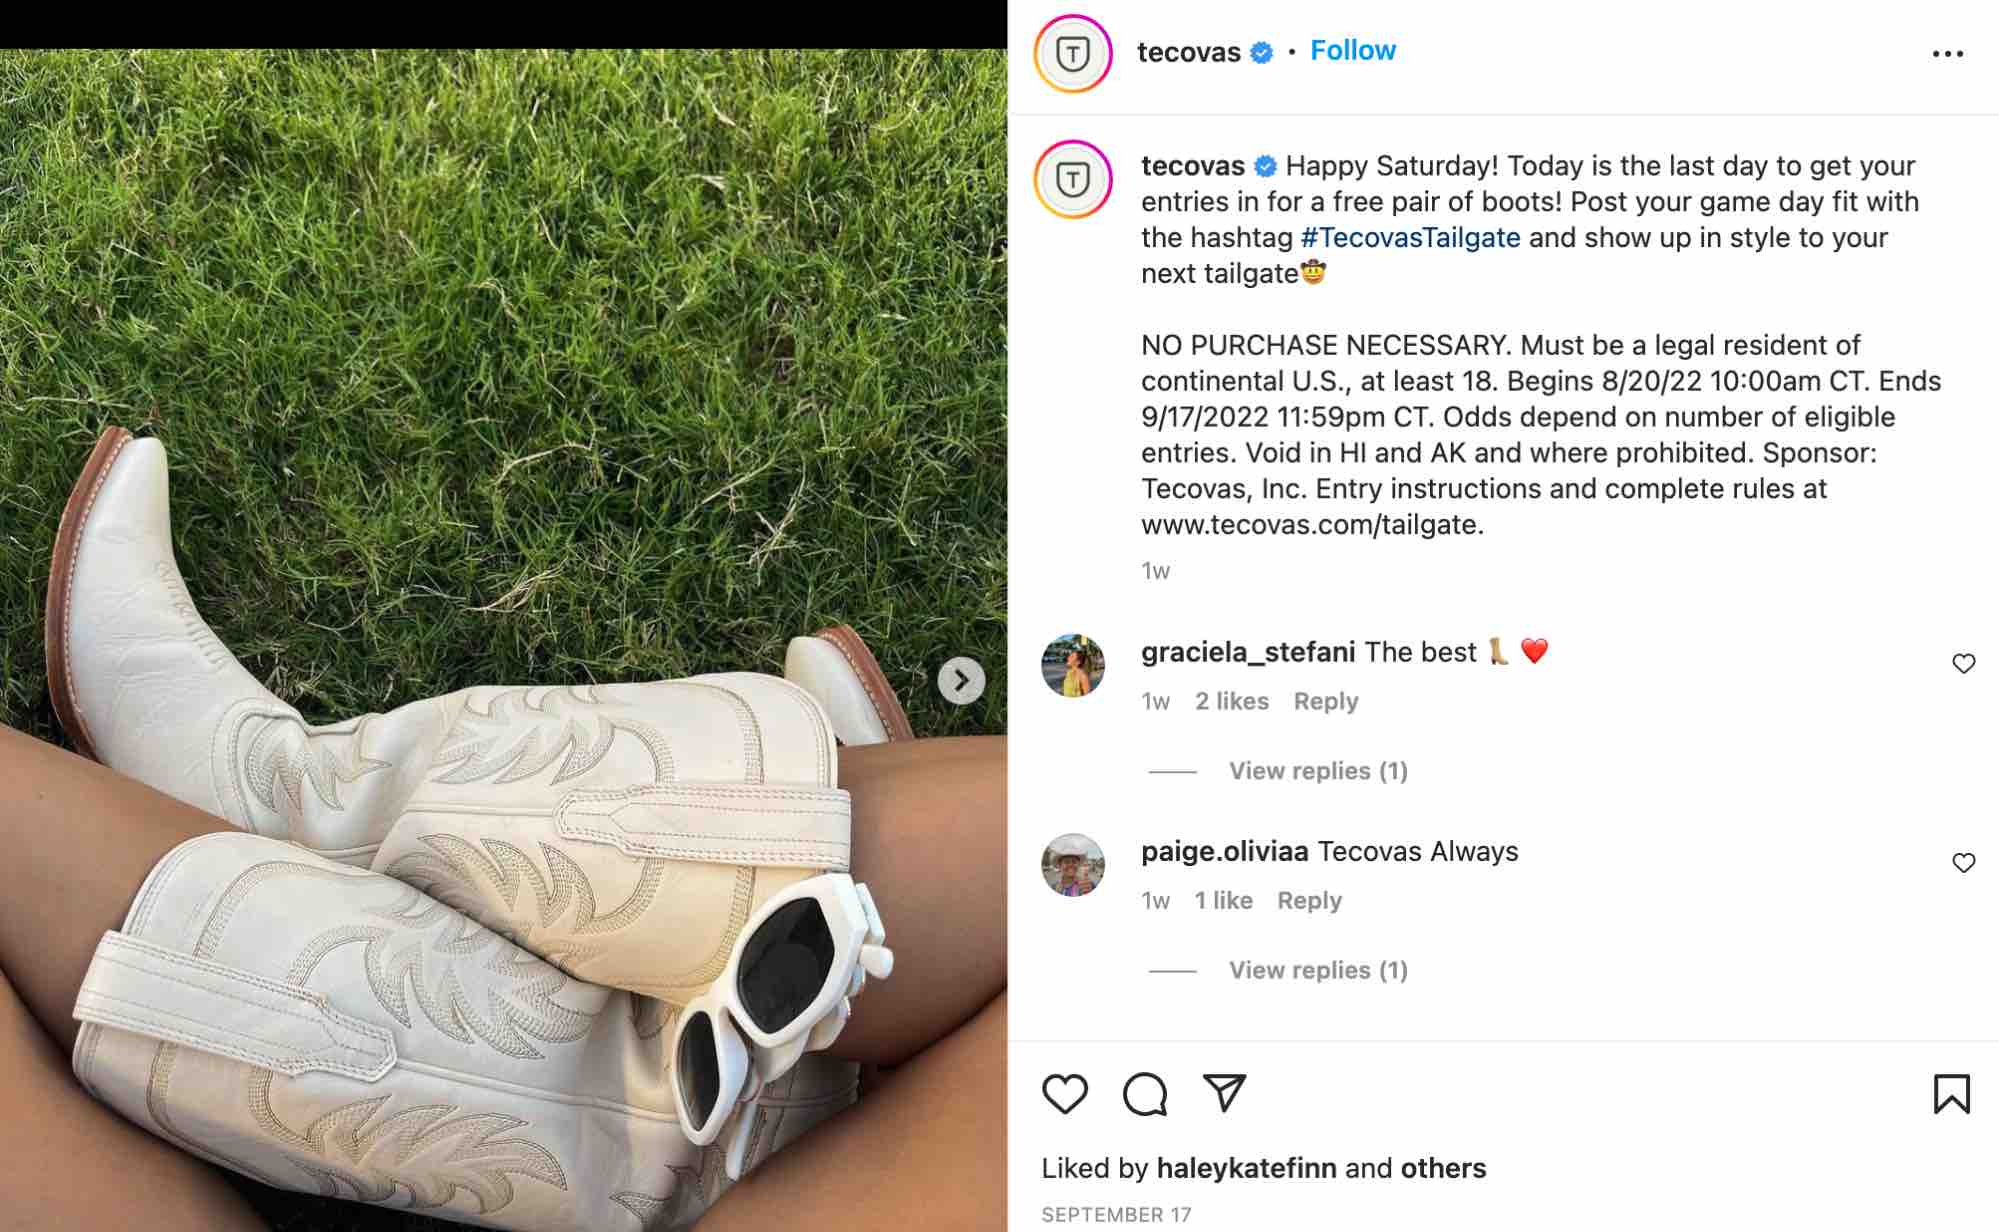 スモール ビジネス向けの instagram マーケティング、ブーツ ブランド Tecovas の Instagram 投稿は、ブランド化されたハッシュタグがスモール ビジネス向けの Instagram マーケティング戦略にどのように効果的であるかを示しています。